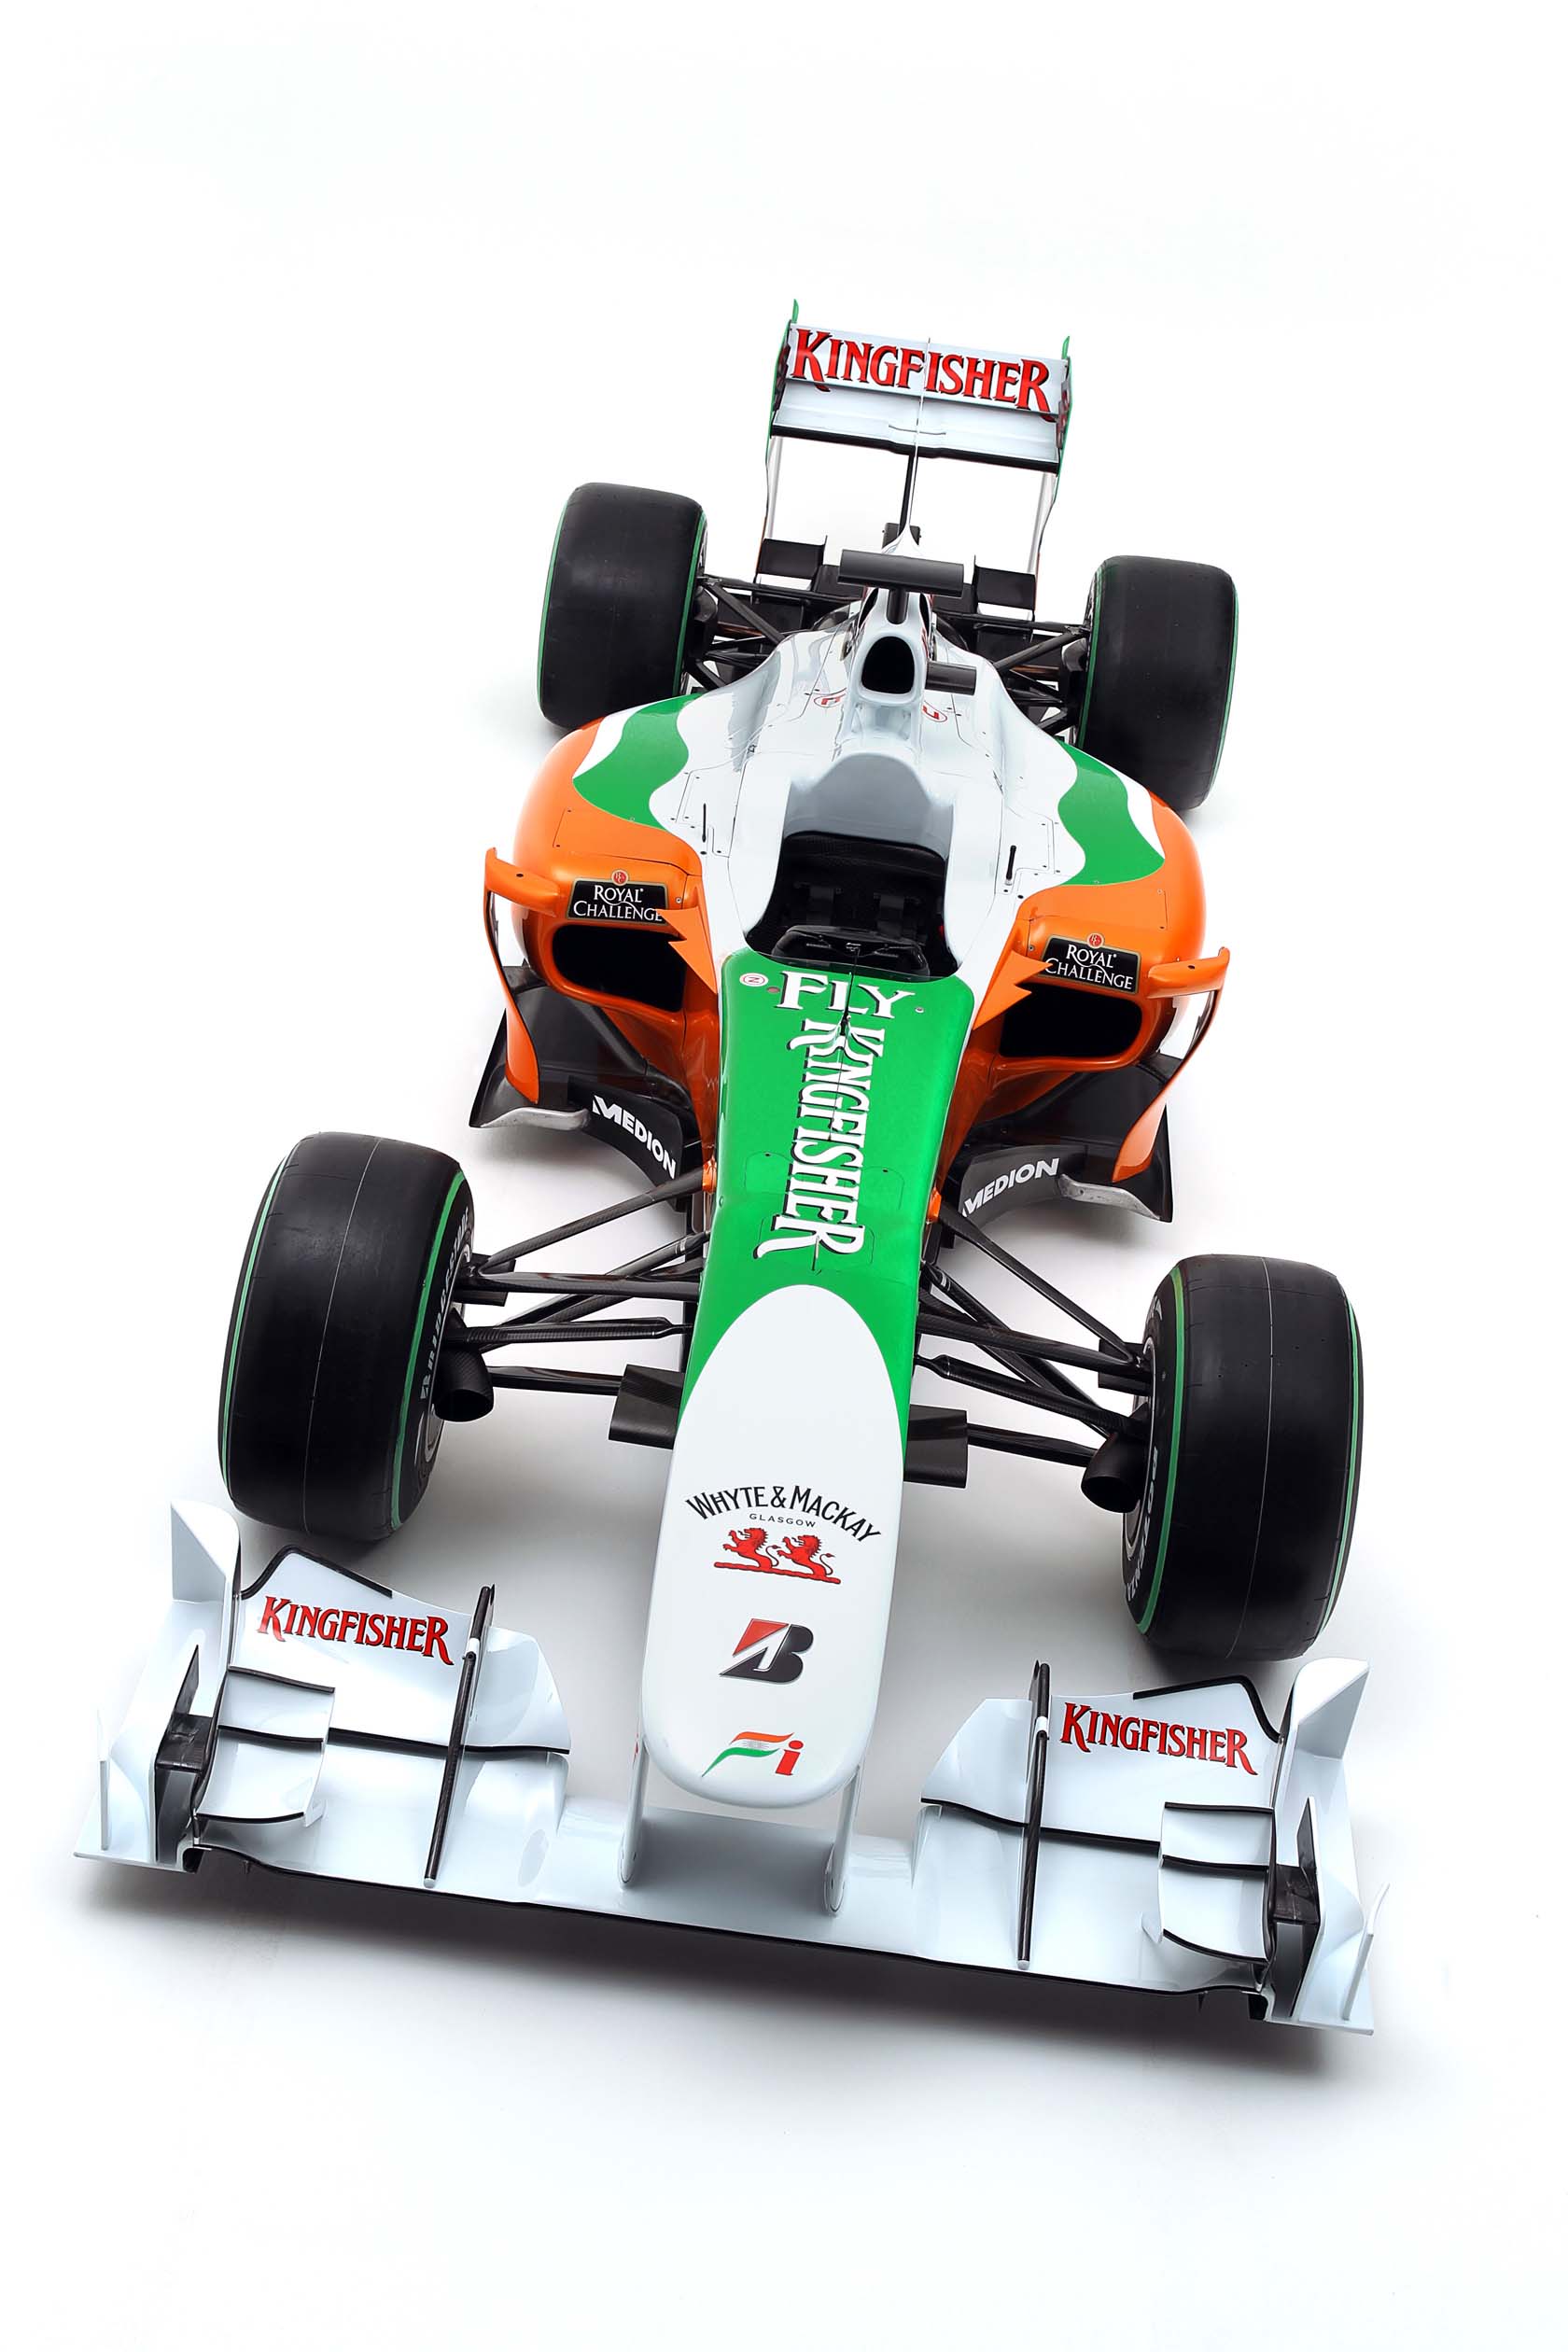 Force India Vjm03 F1 Fanatic